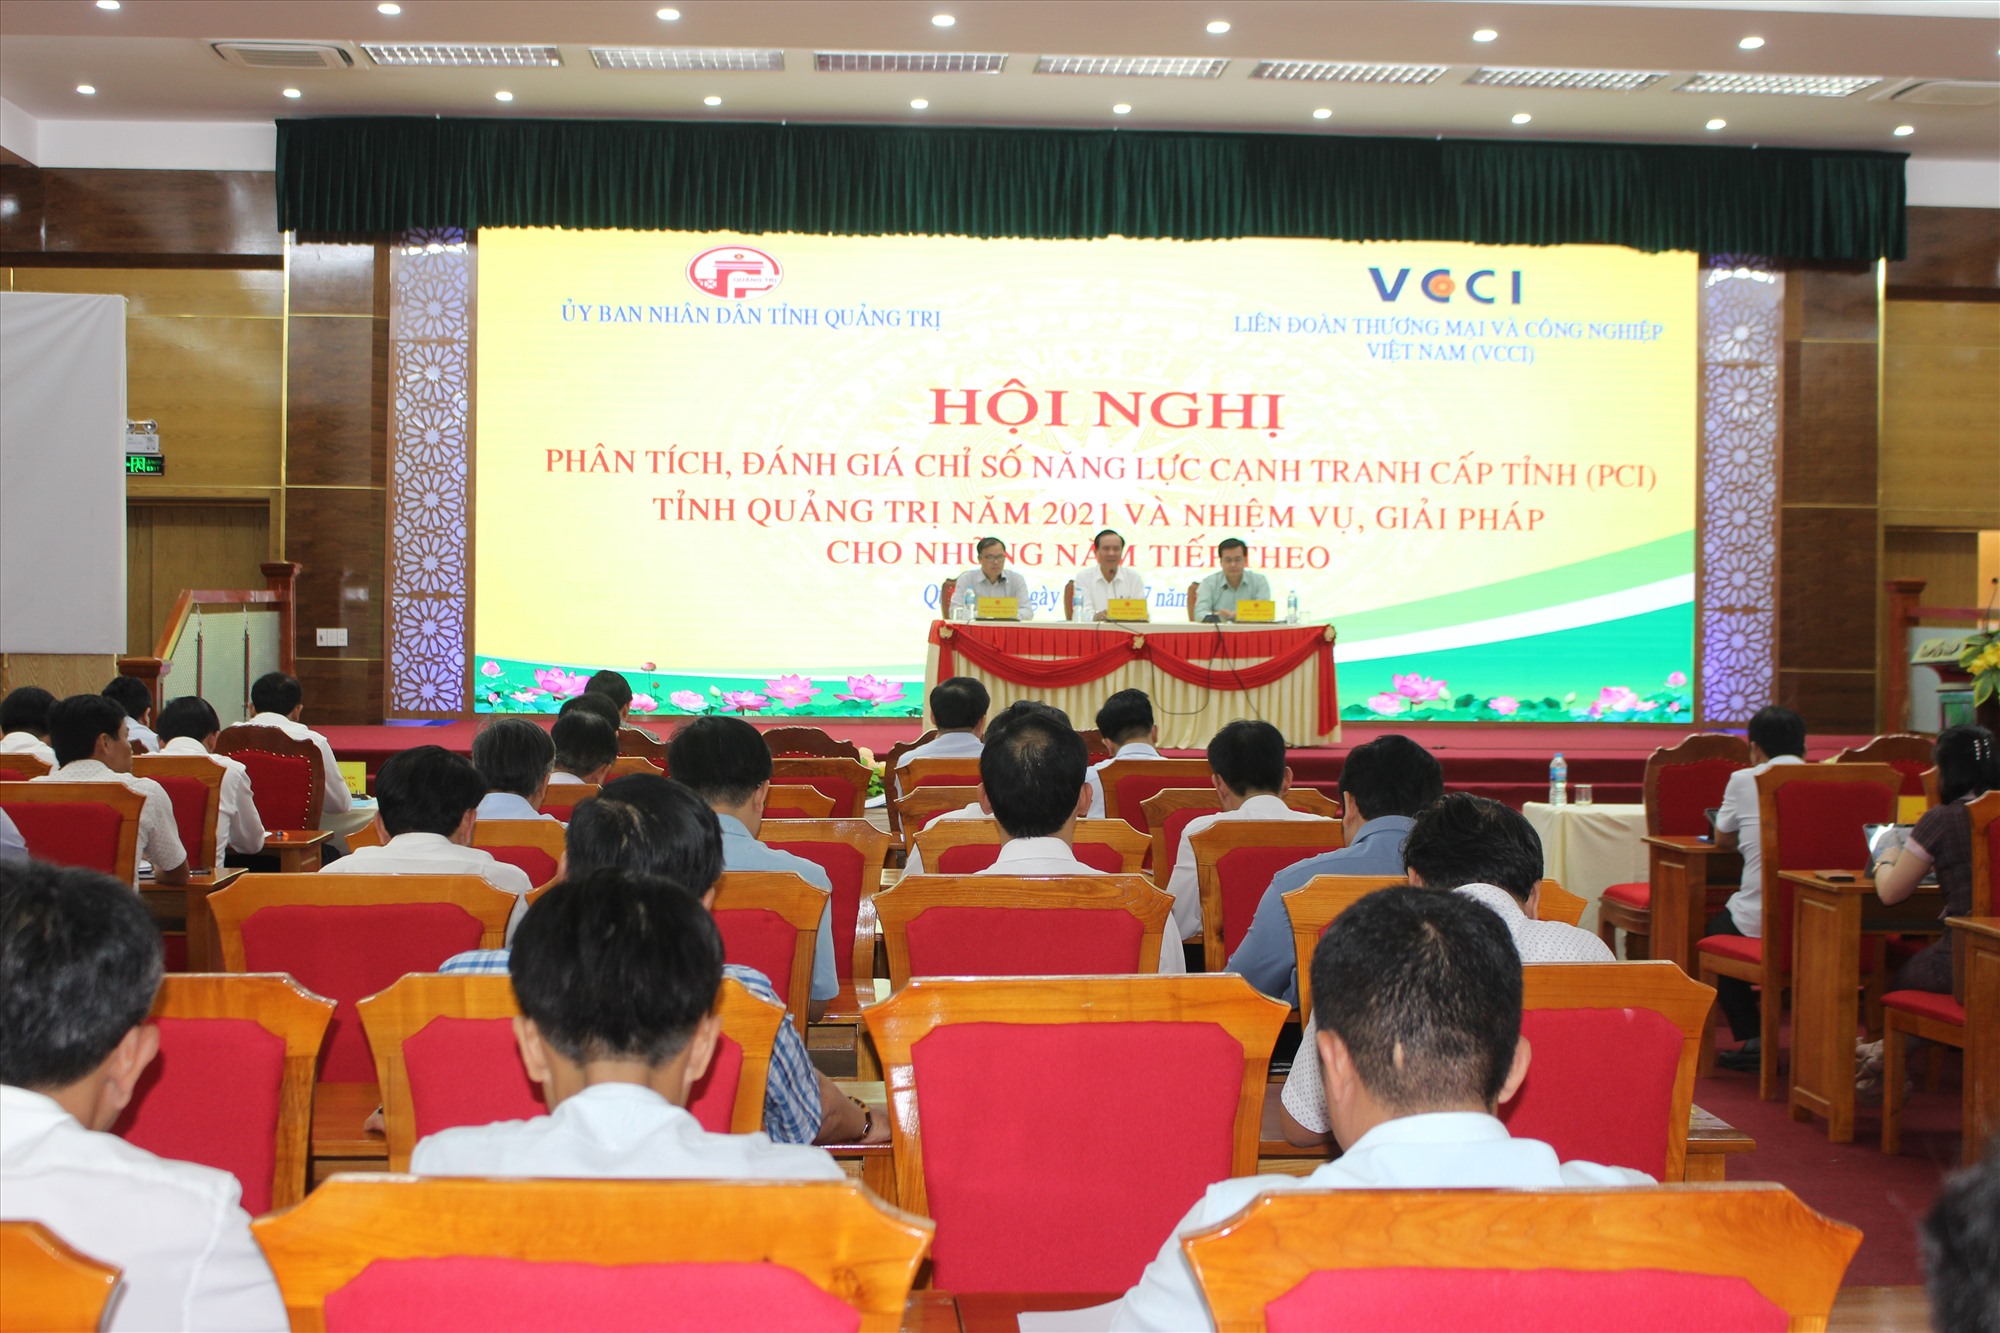 Chủ tịch UBND tỉnh Võ Văn Hưng đề nghị khẩn trương xây dựng kế hoạch cải thiện và nâng cao chỉ số năng lực cạnh tranh tại đơn vị, địa phương - Ảnh: T.T